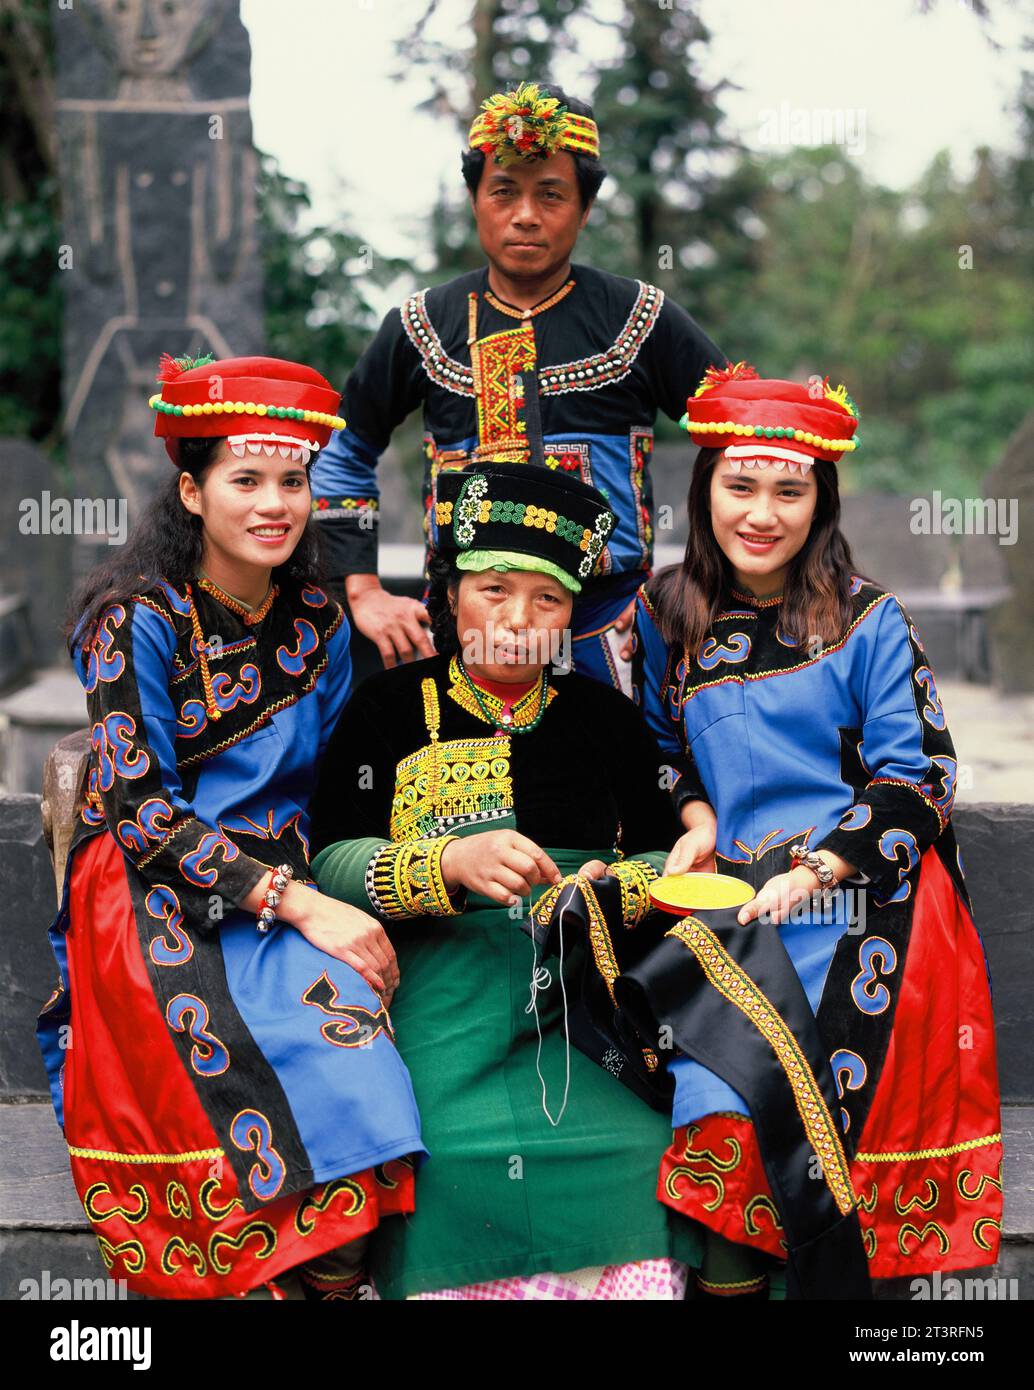 Taiwan. Hualien region. Man & women in tribal dress. Stock Photo